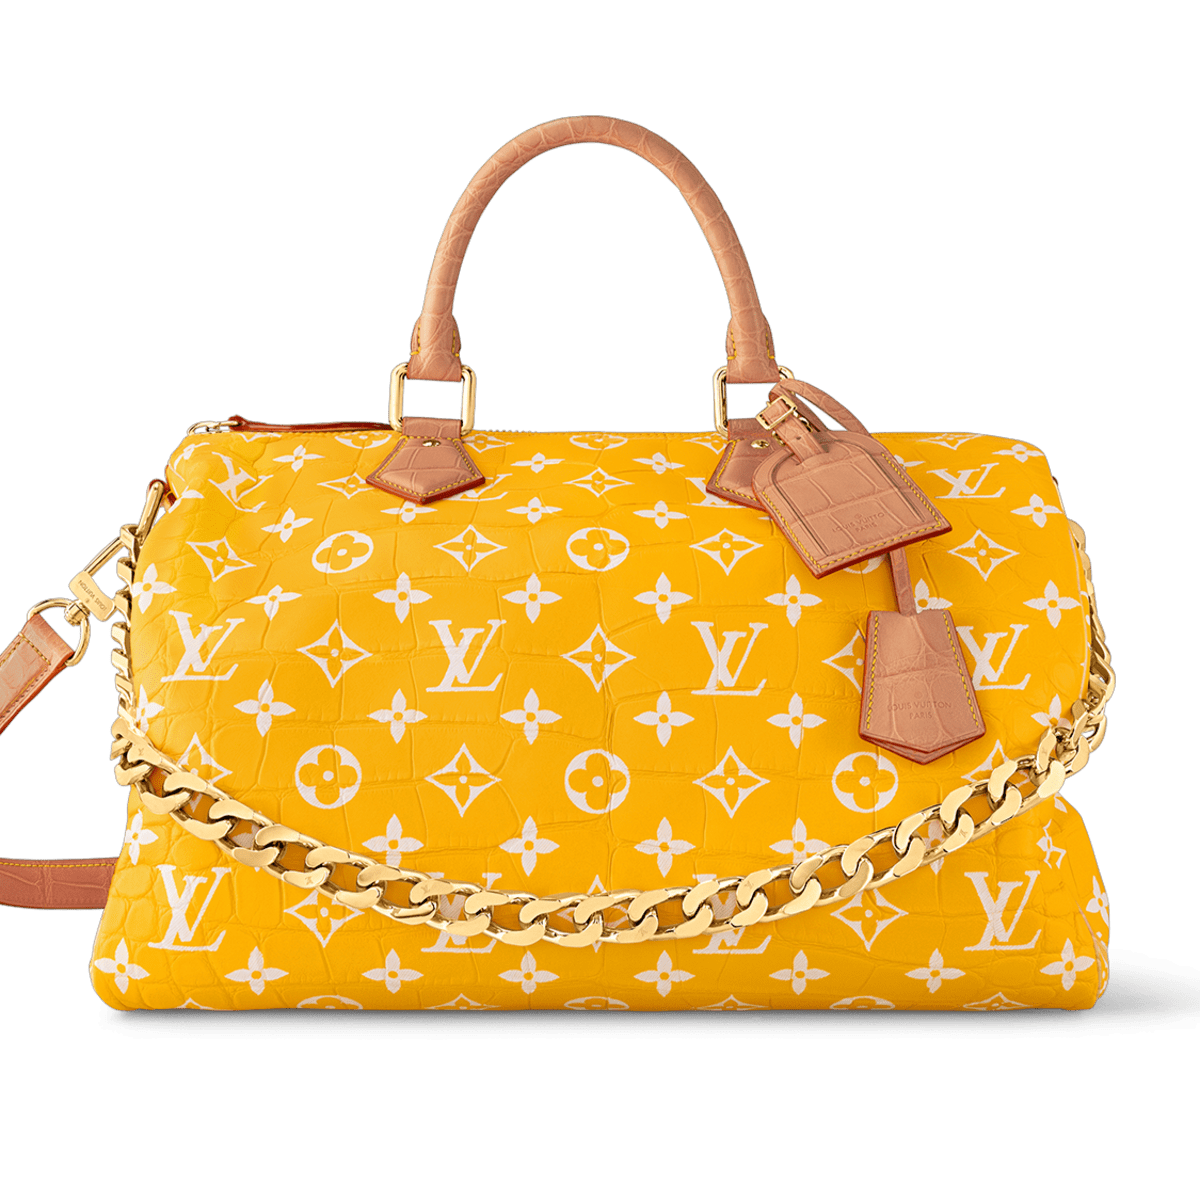 Louis Vuitton Logo Shopping Bag Gift Bag Orange 14 x 9 3/4 x 4 1/4